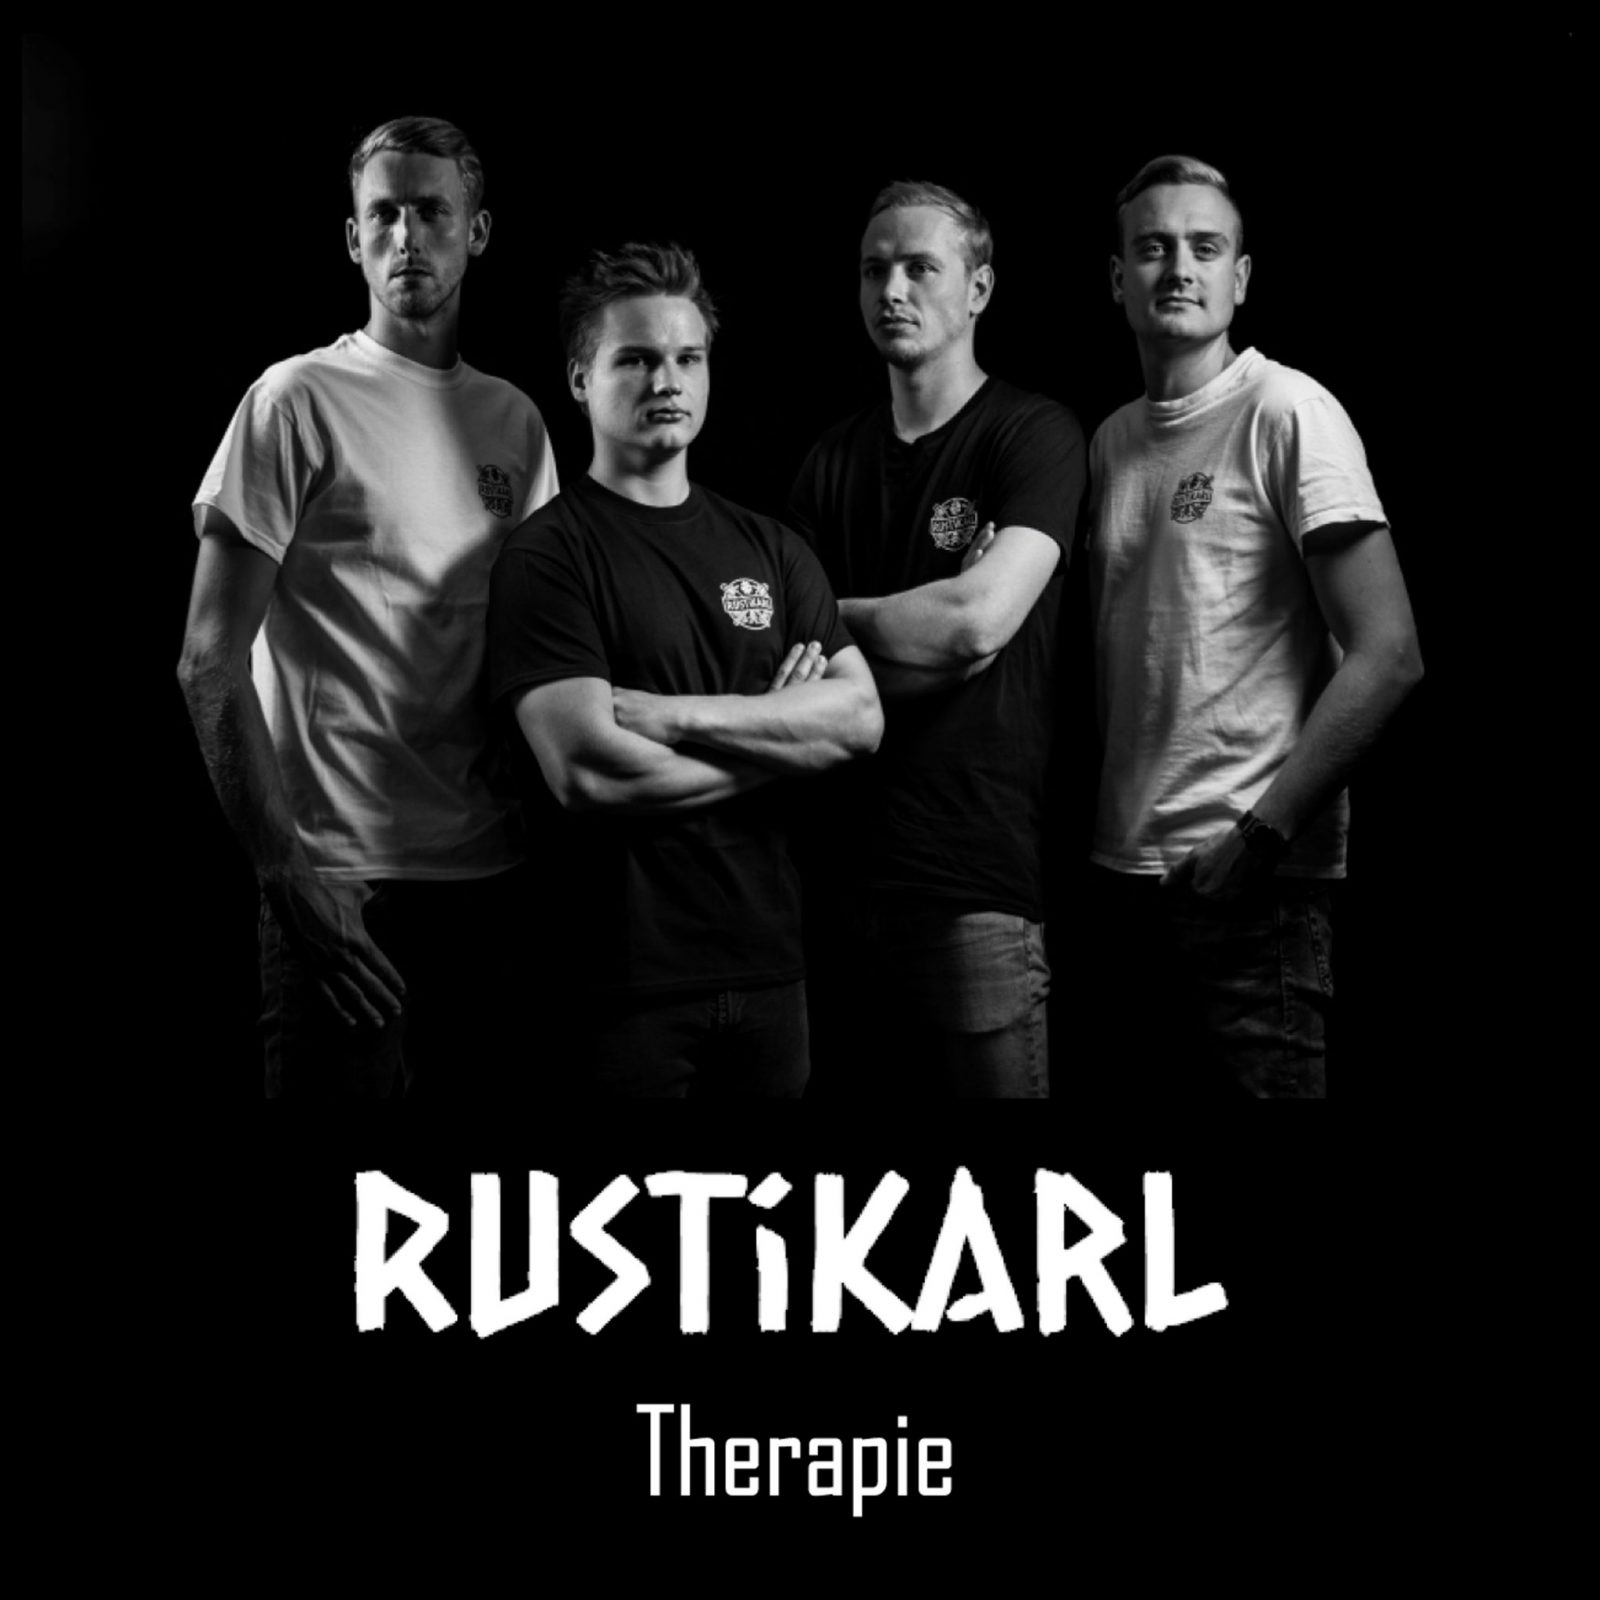 RUSTiKARL "Therapie" VÖ 25.01.2019 im Vertrieb von Cargo Records